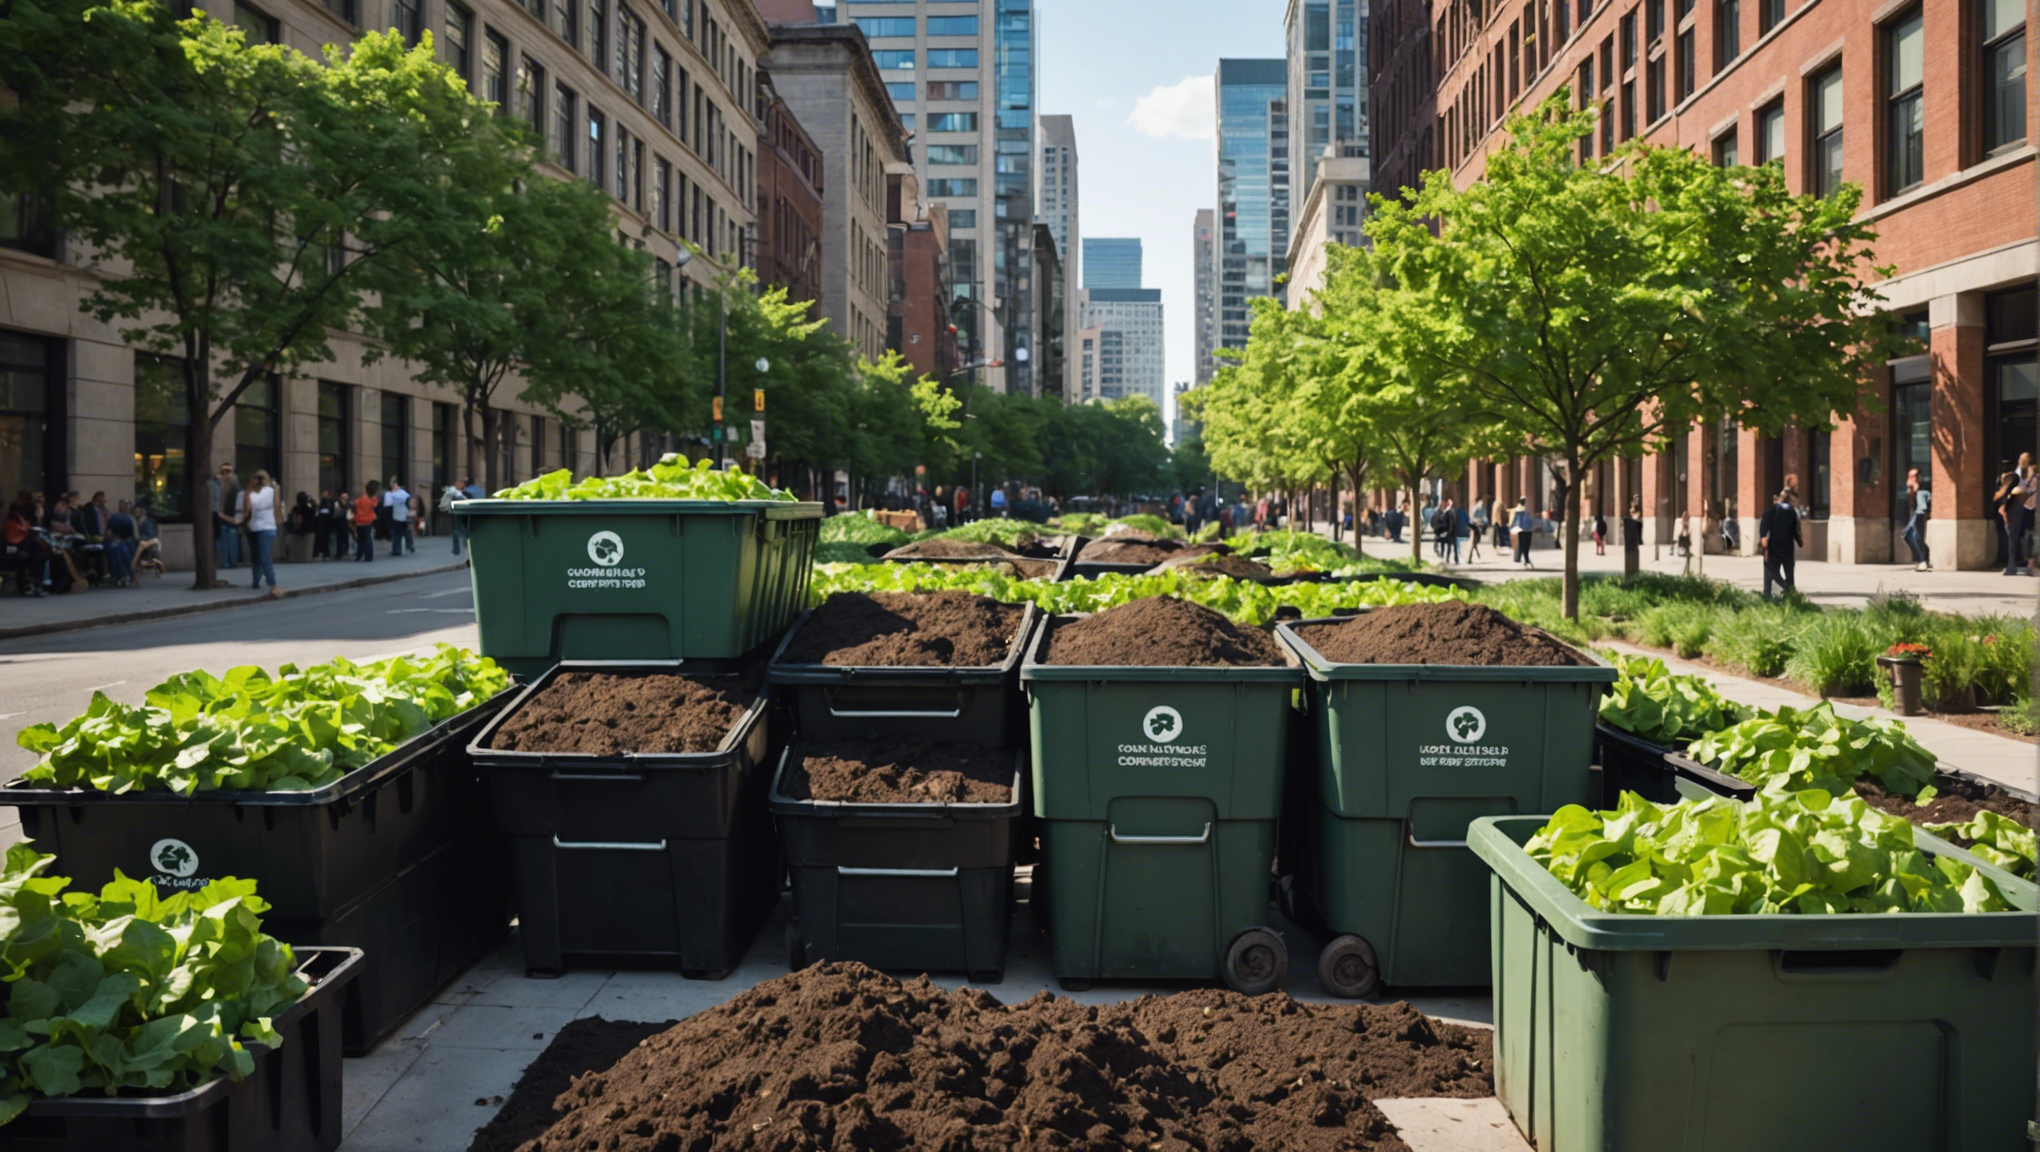 découvrez nos conseils pratiques pour réussir votre compostage en ville et réduire vos déchets organiques de manière écologique et durable.